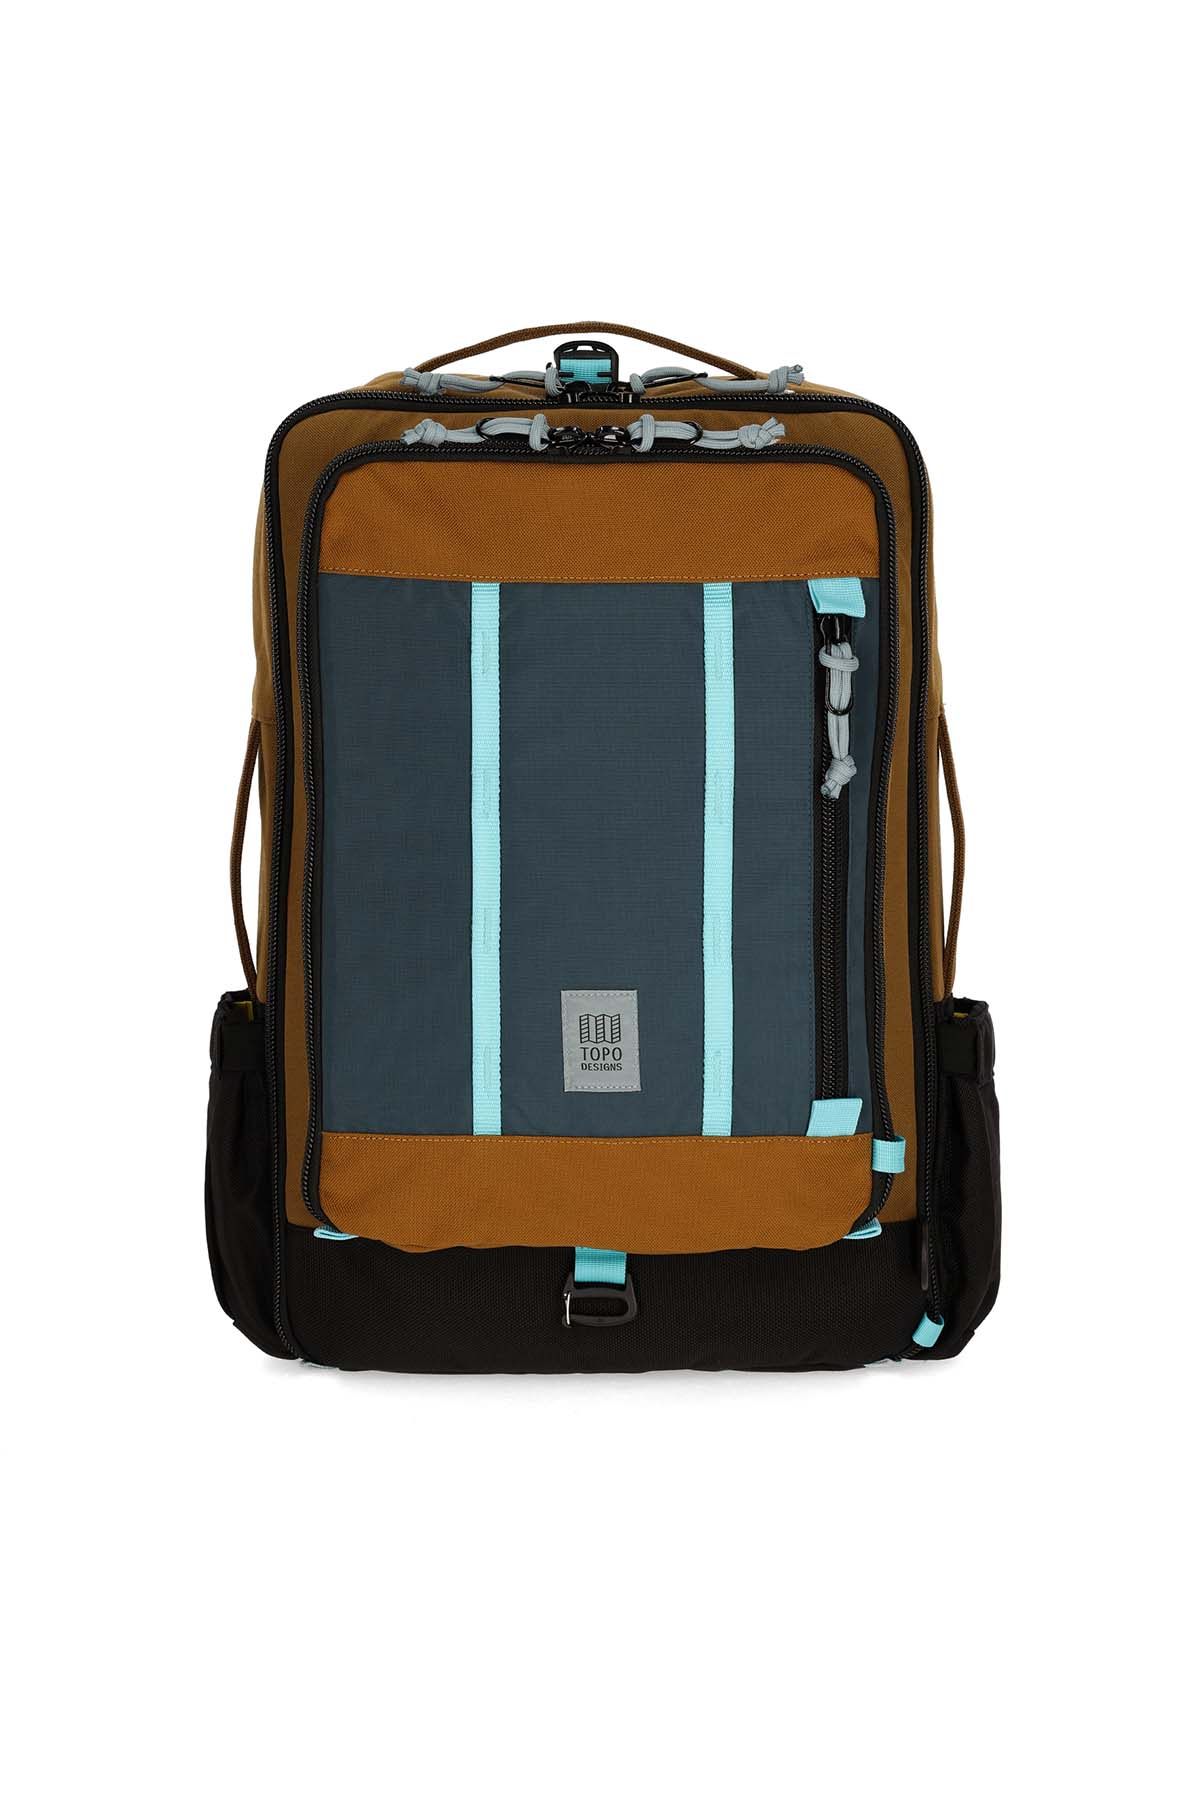 Topo Designs - Global Travel Bag 30L - Desert Palm/Pond Blue - Front